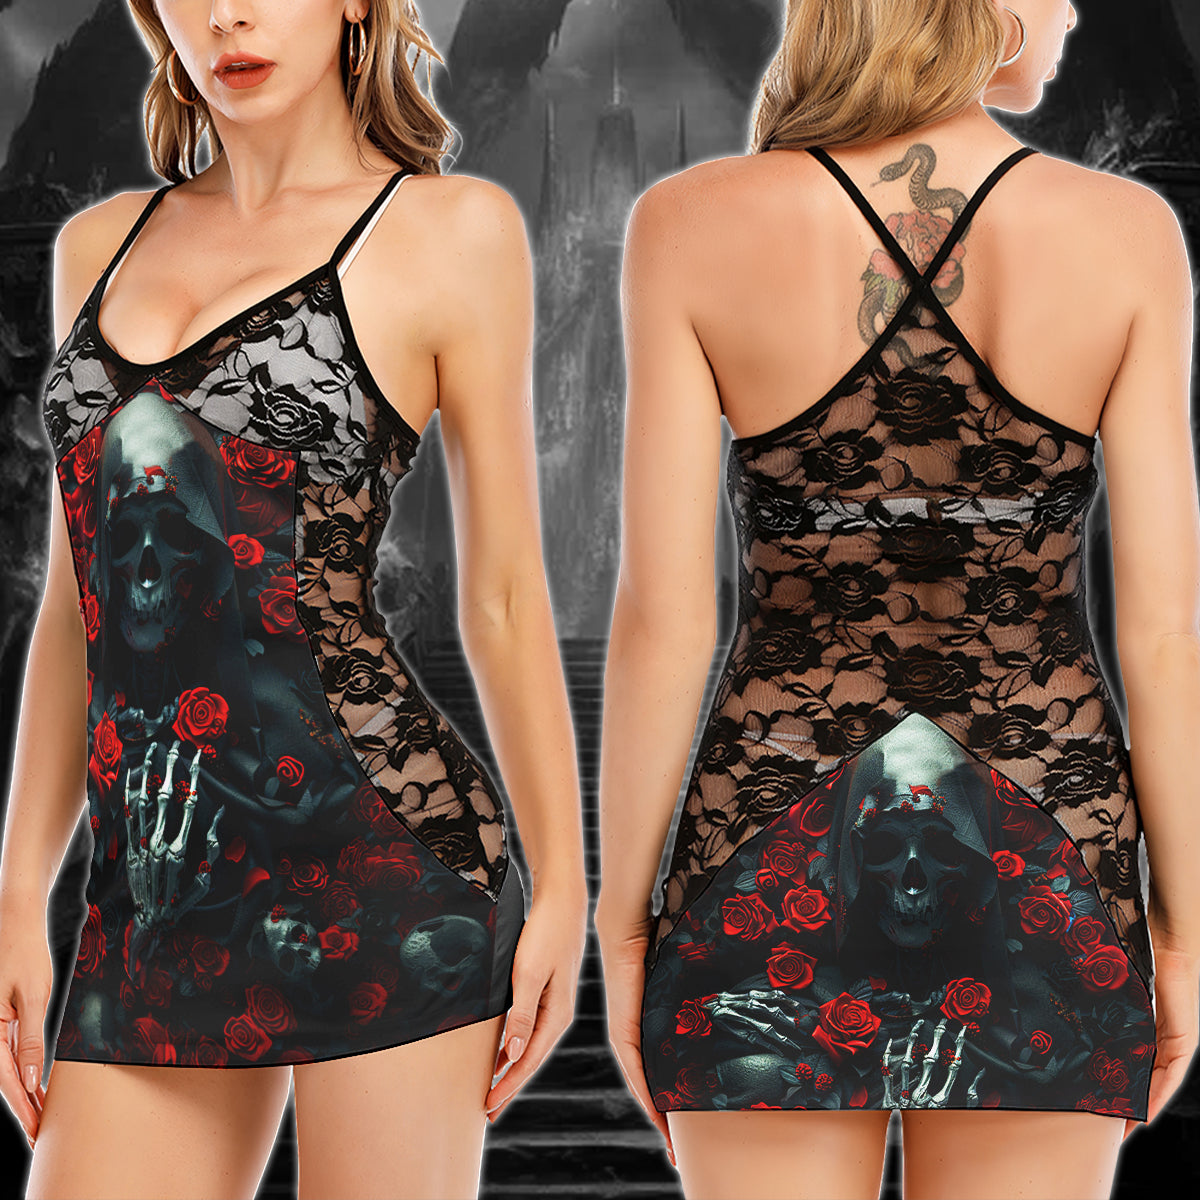 Grim Reaper Rose Pattern Women's Black Lace Babydolls Nightgowns | Women Sleepwear Babydoll, Nightgowns